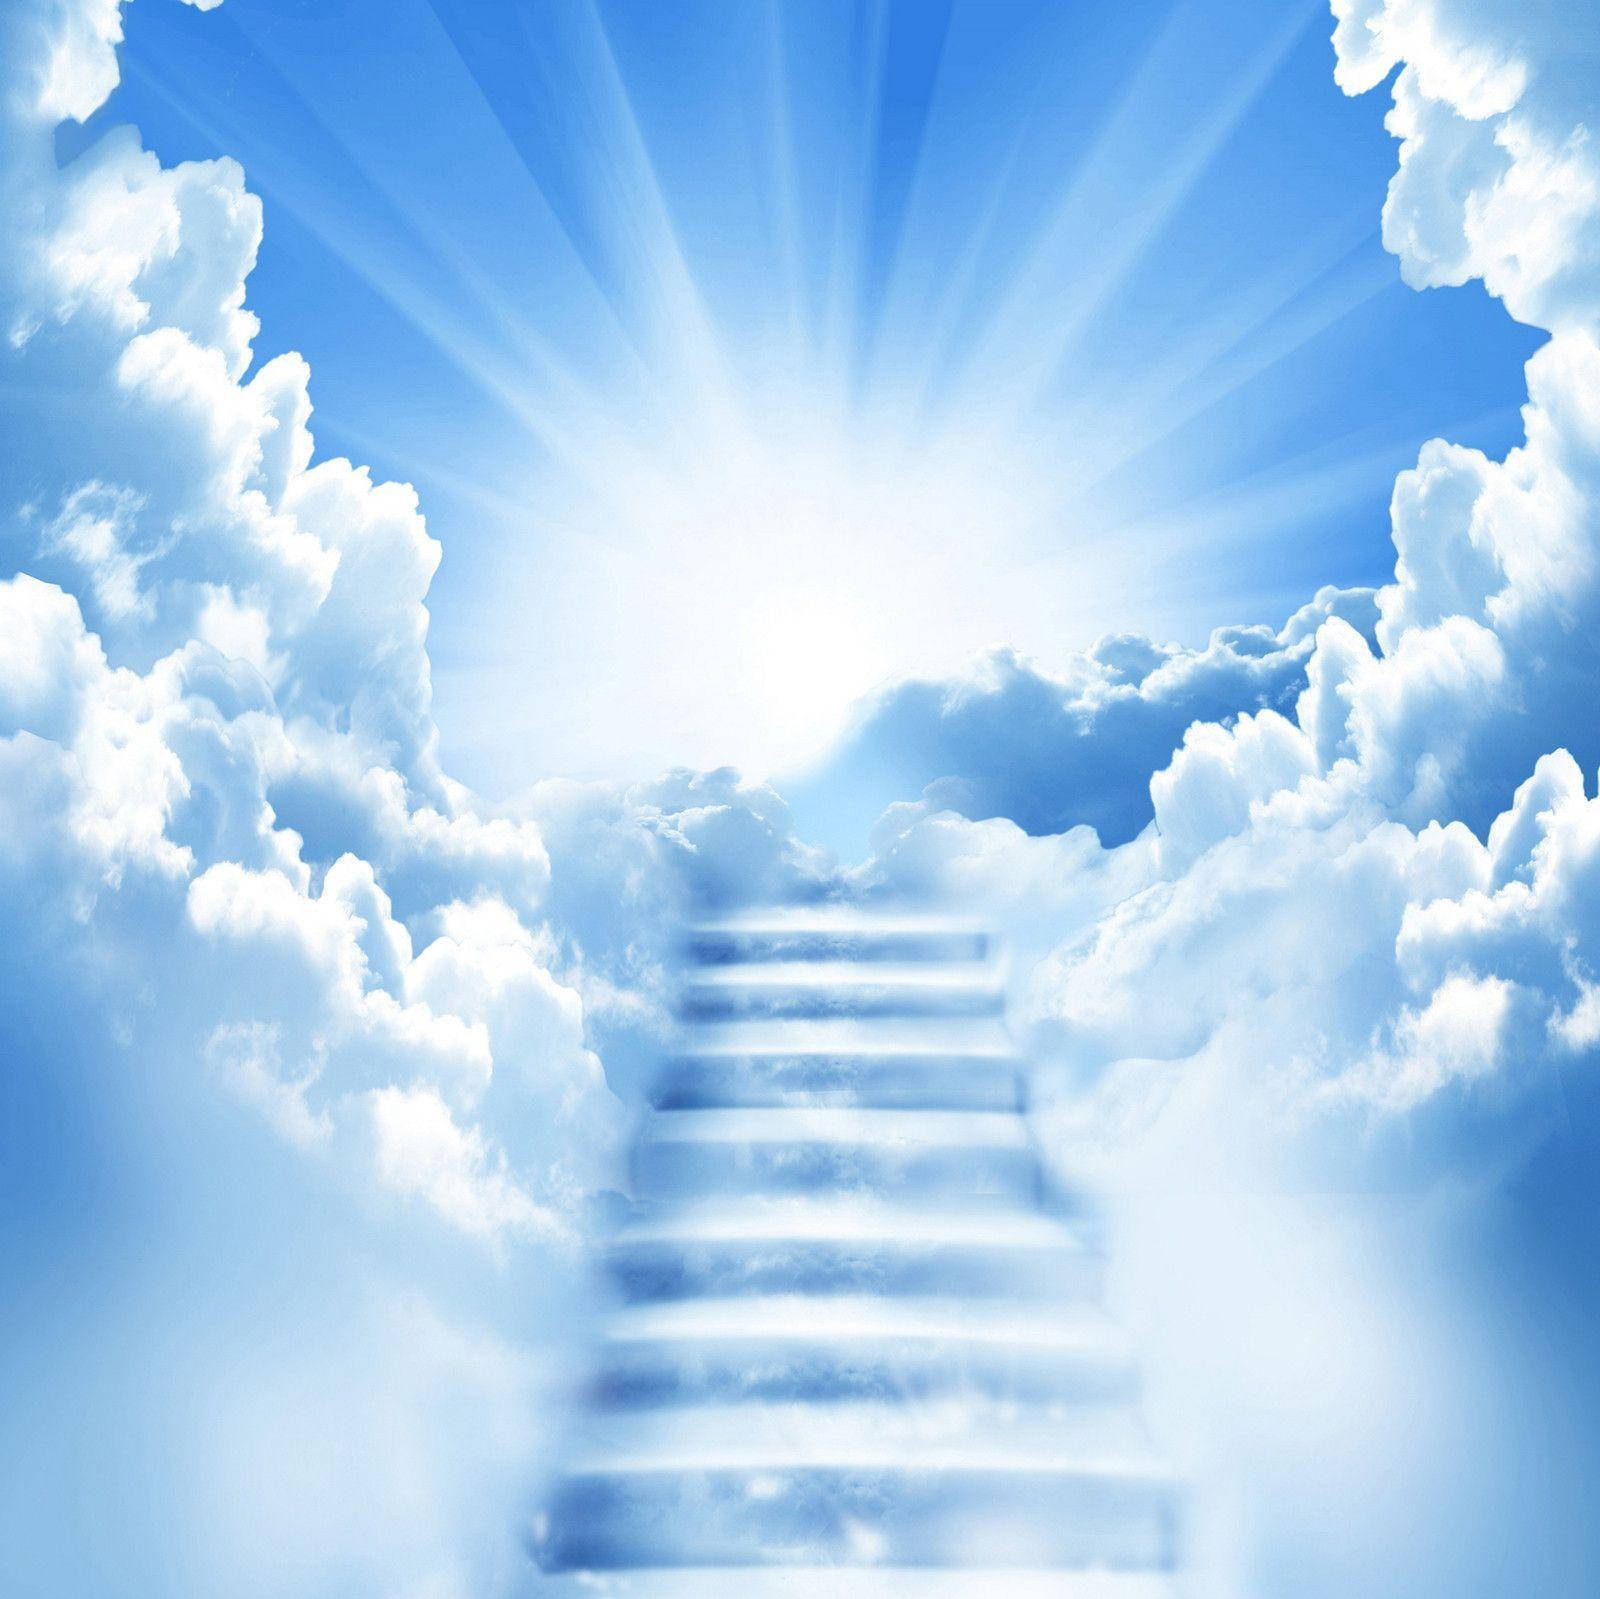 Funeral Blue Sky Stairway Wallpaper